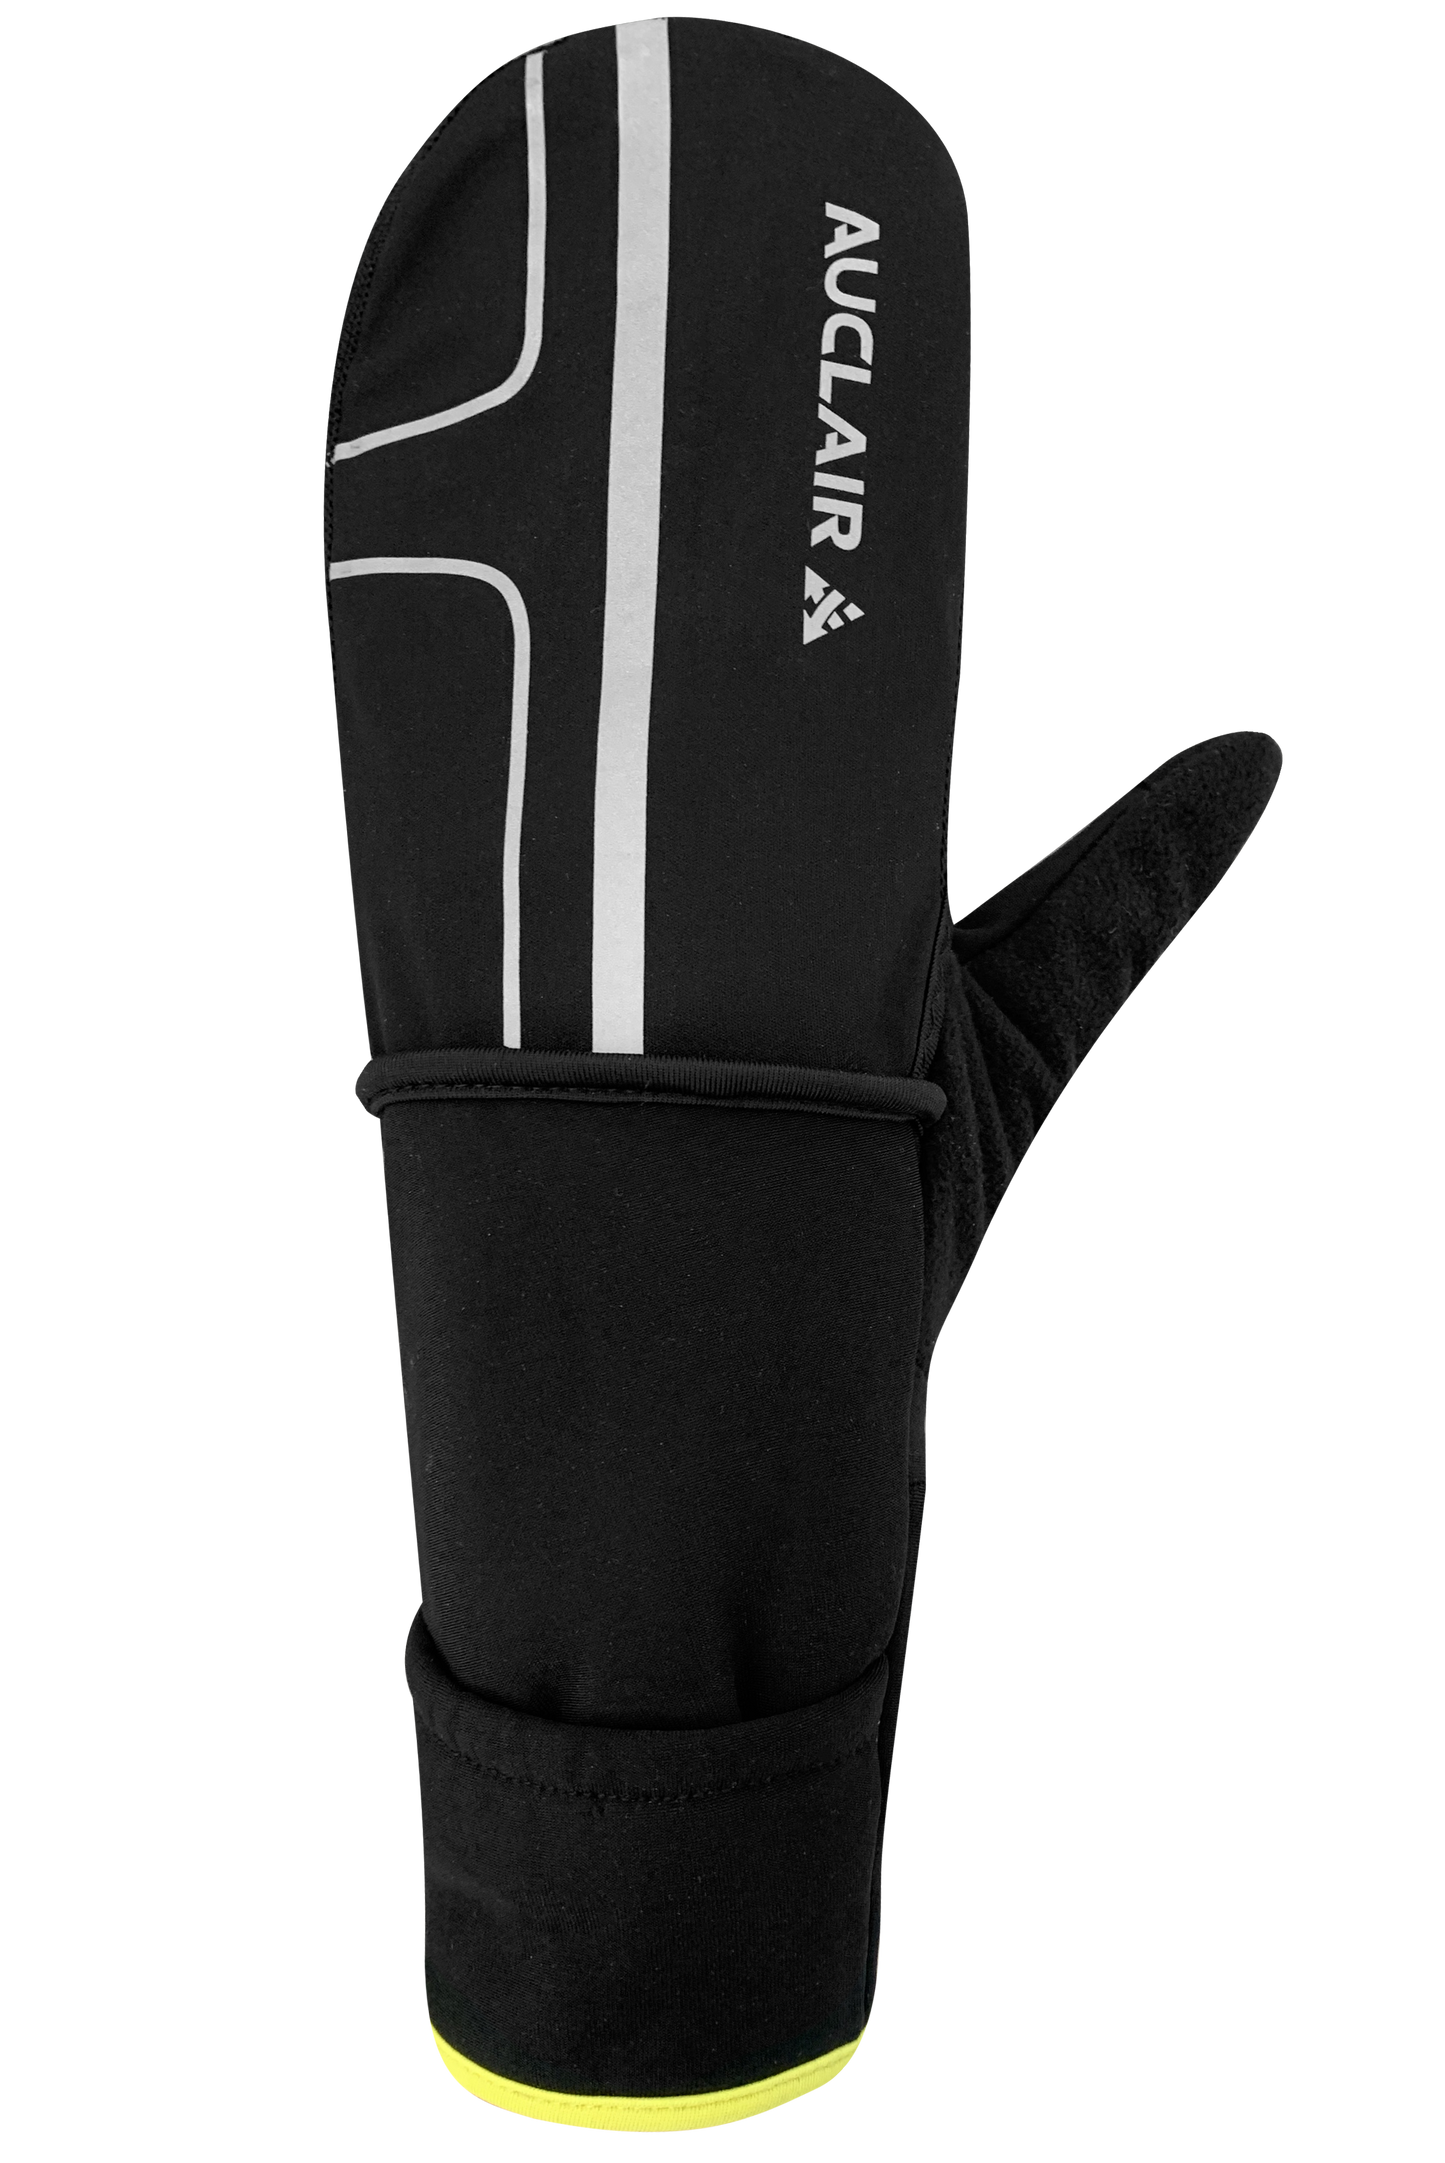 VO2 Max Gloves - Unisex